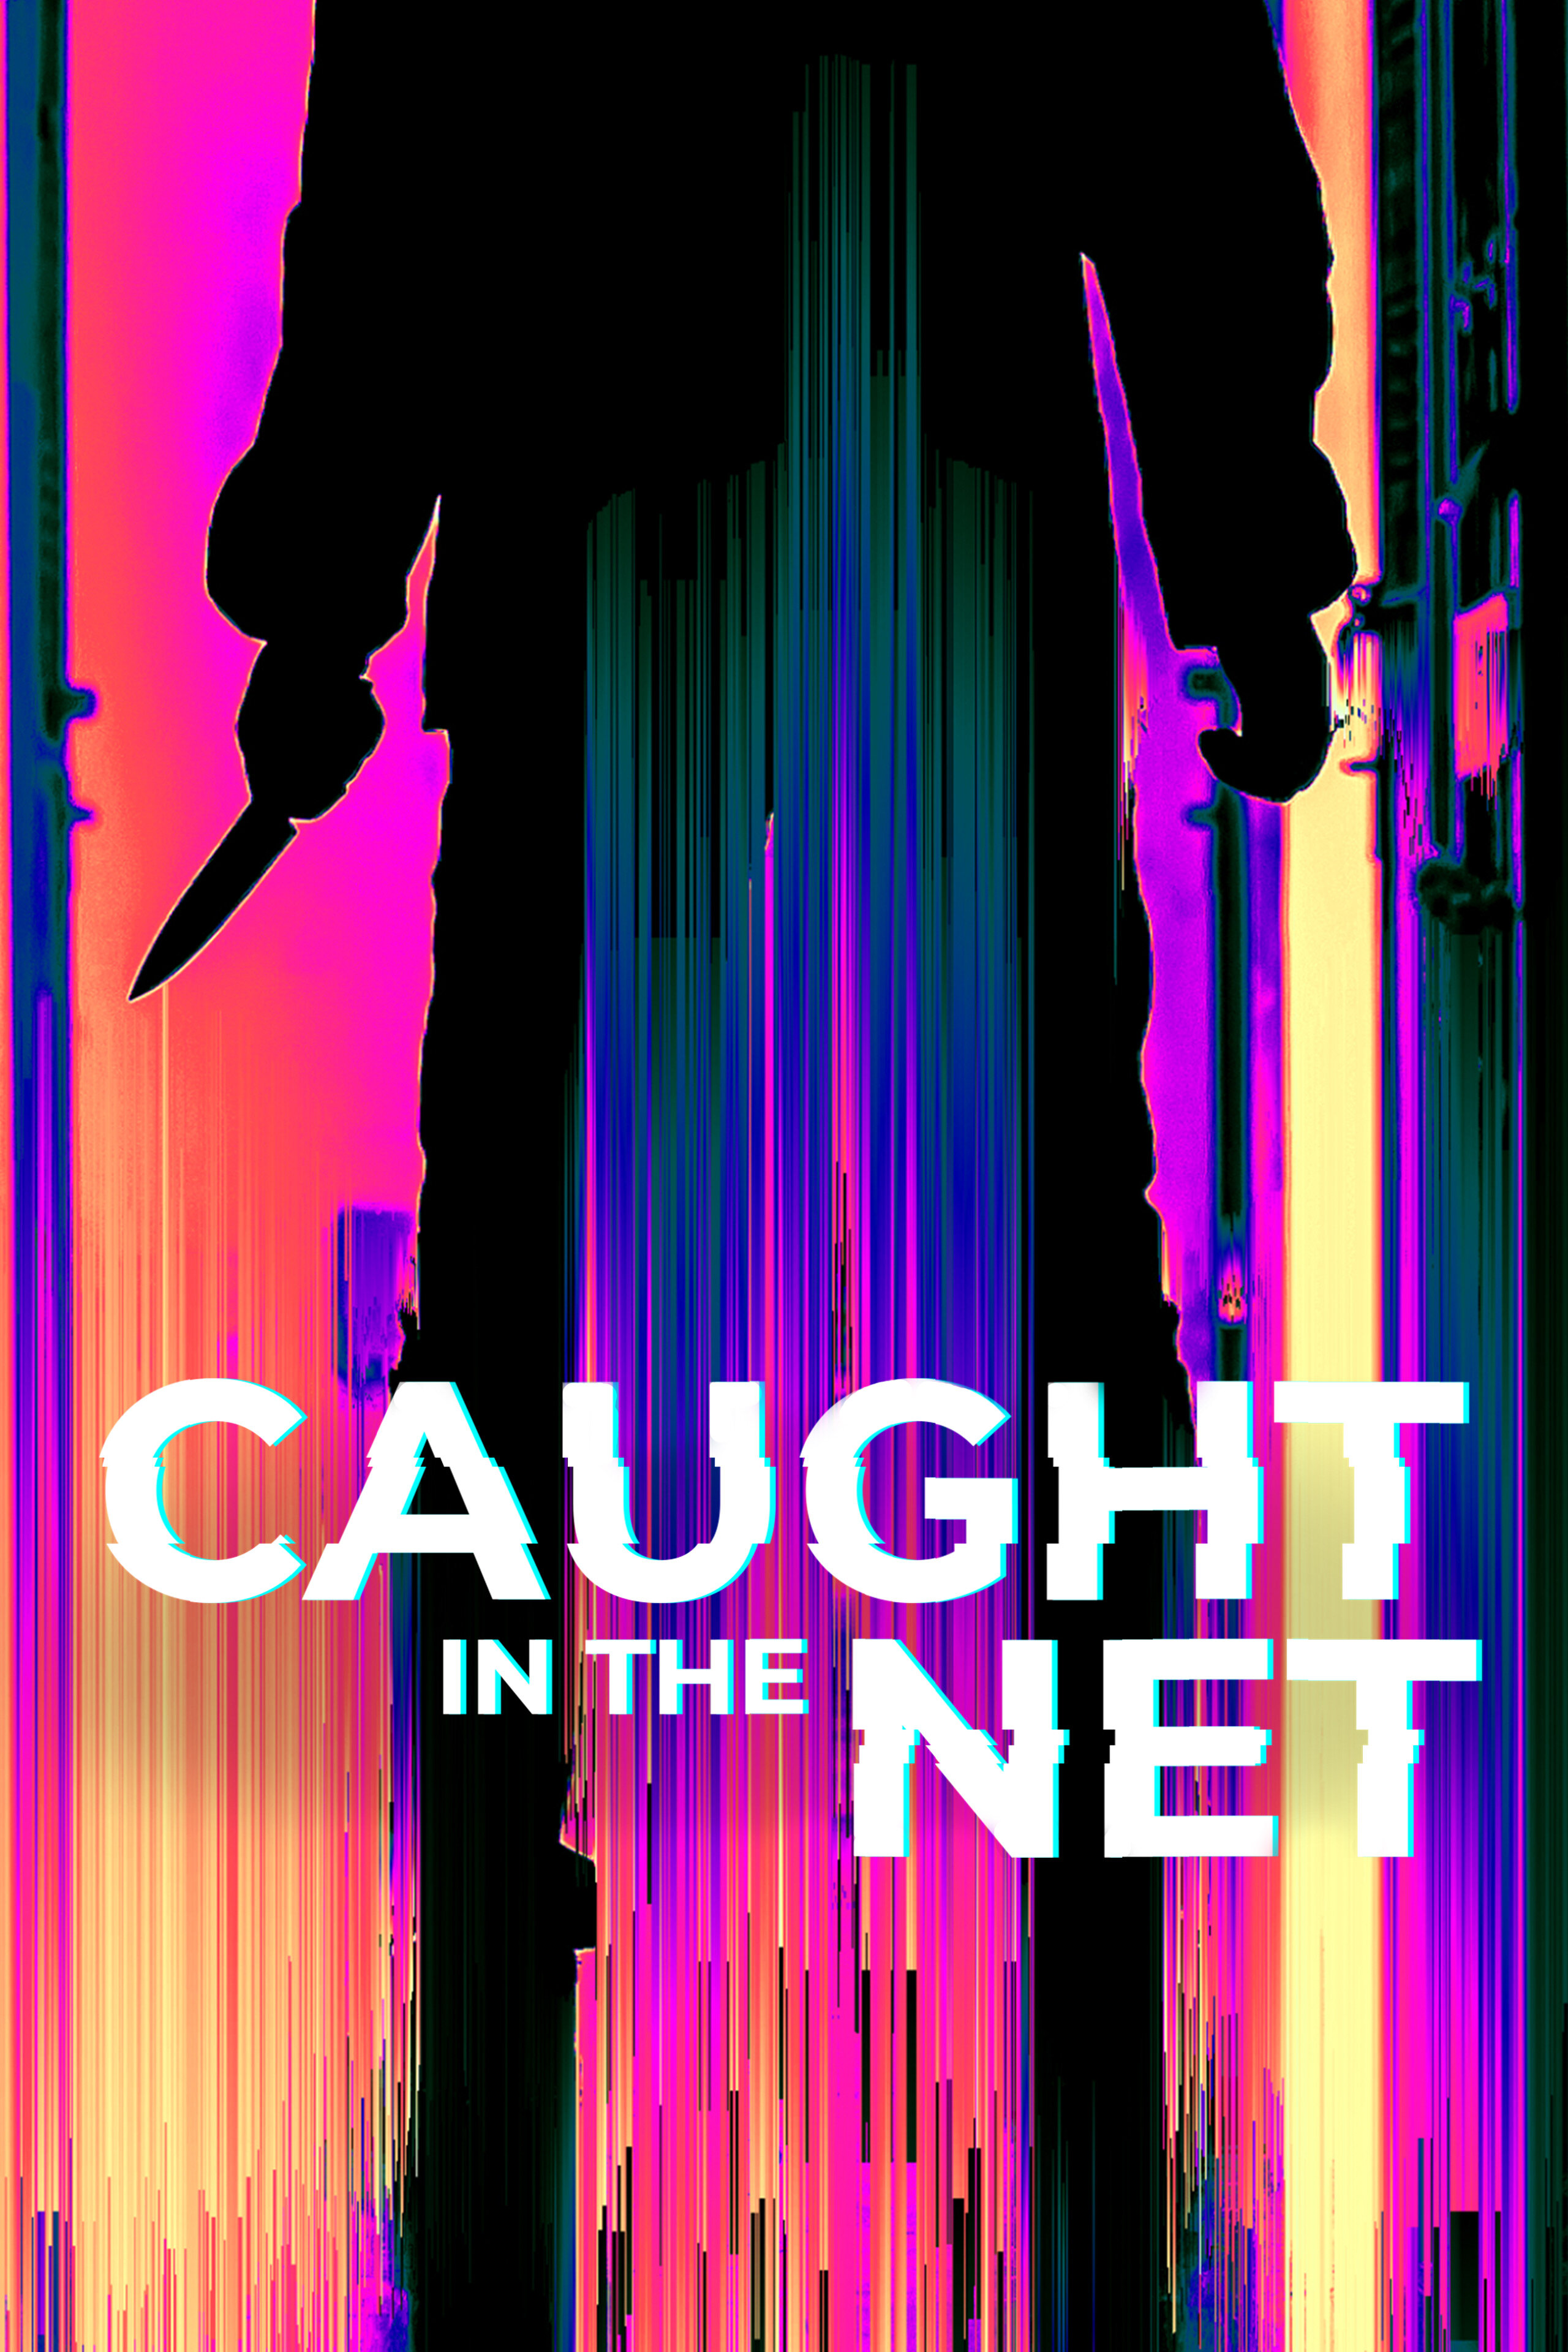 Caught in the Net ne zaman